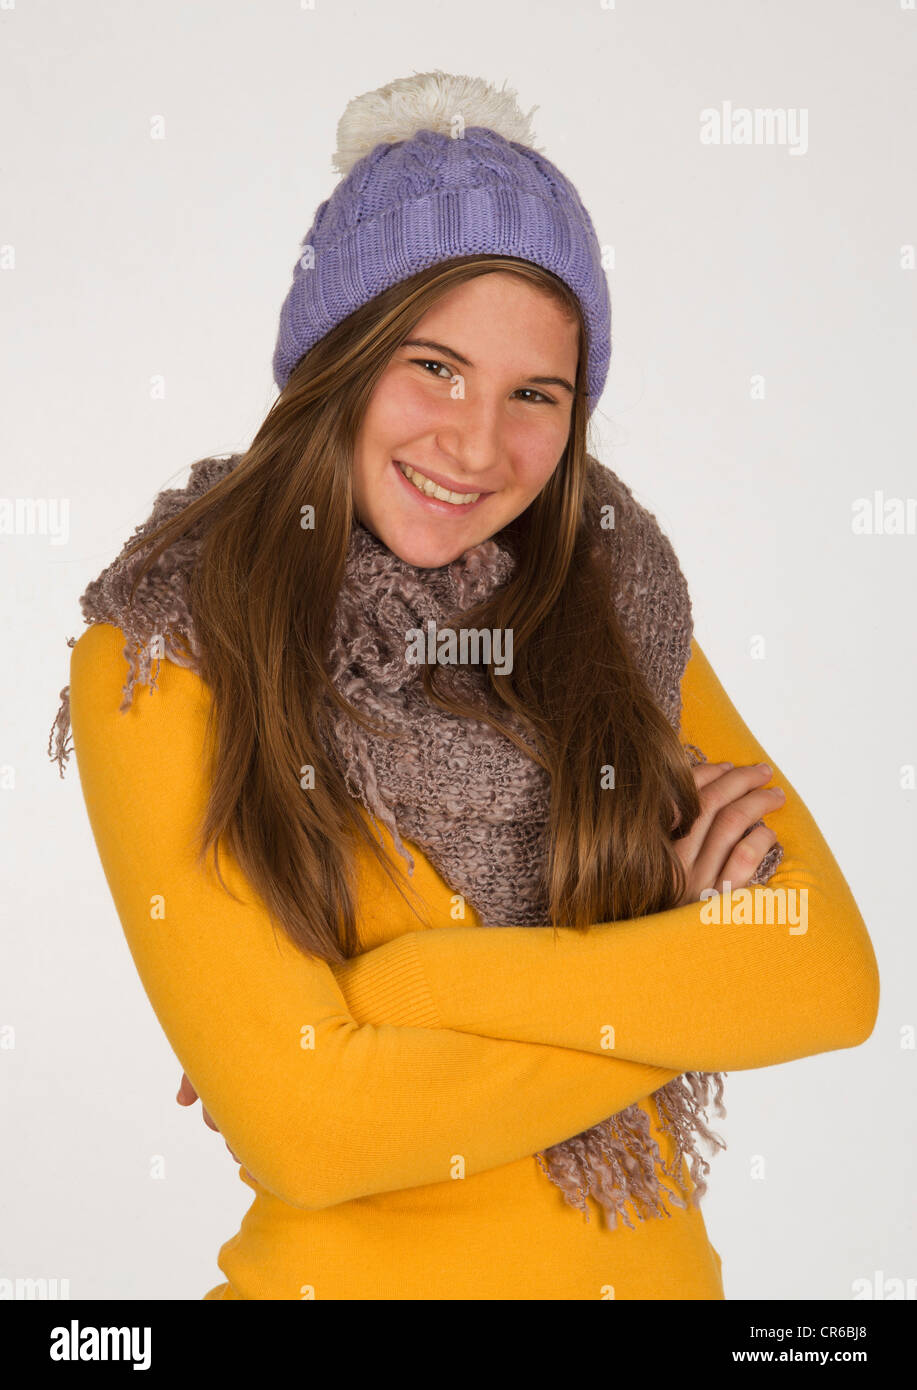 Ragazza adolescente contro uno sfondo bianco, sorridente, ritratto Foto Stock